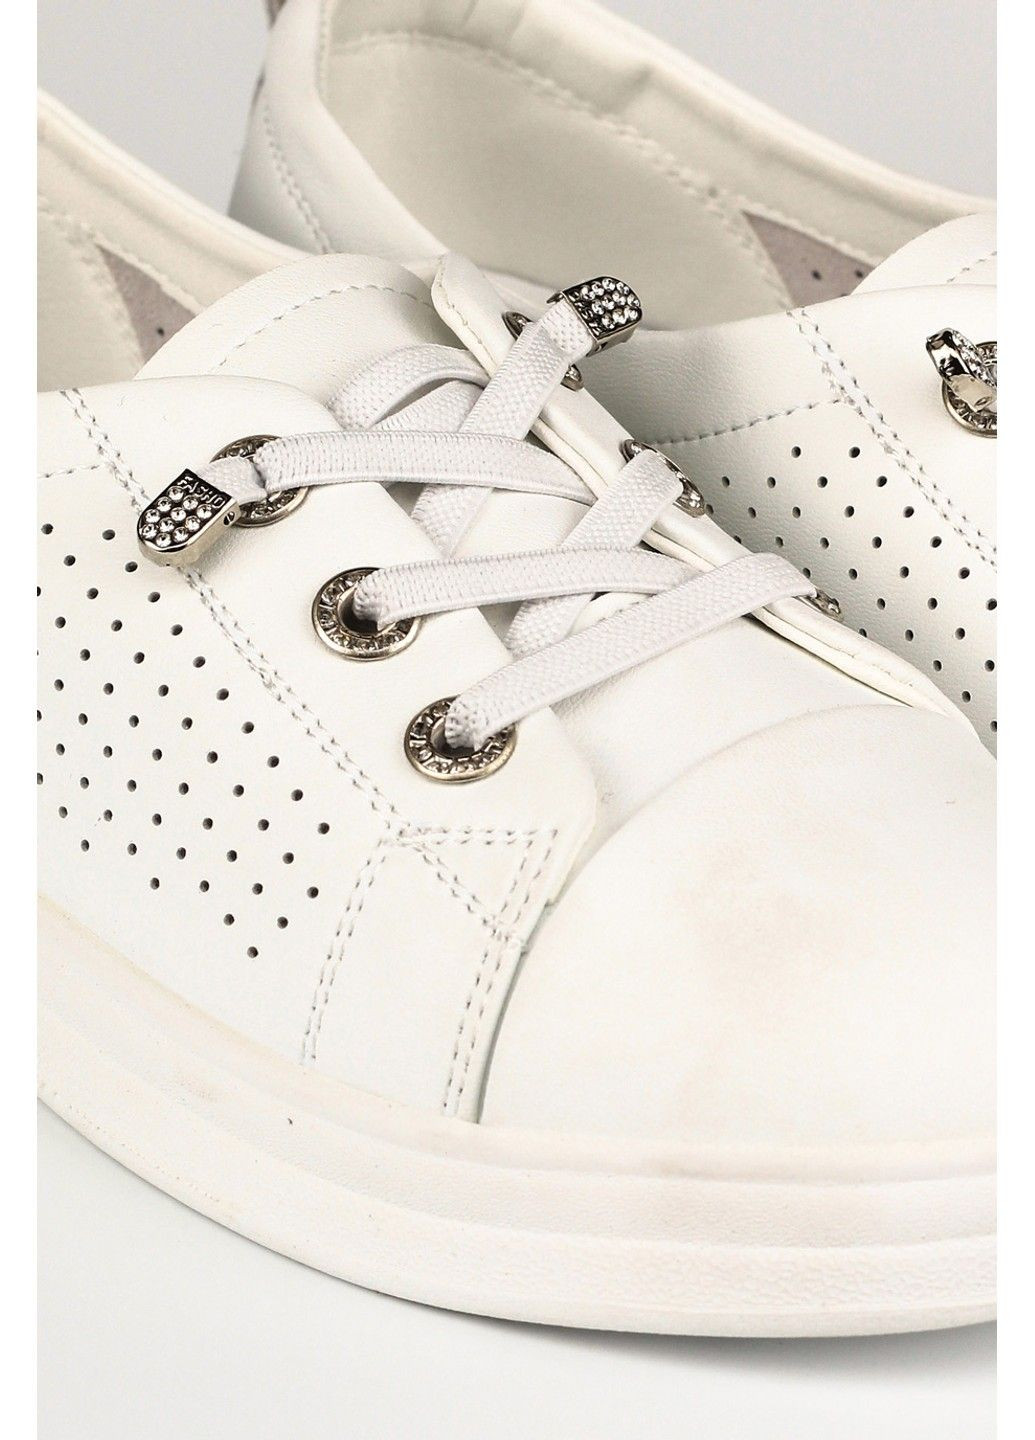 Білі осінні жіночі кросівки 1100370 Buts